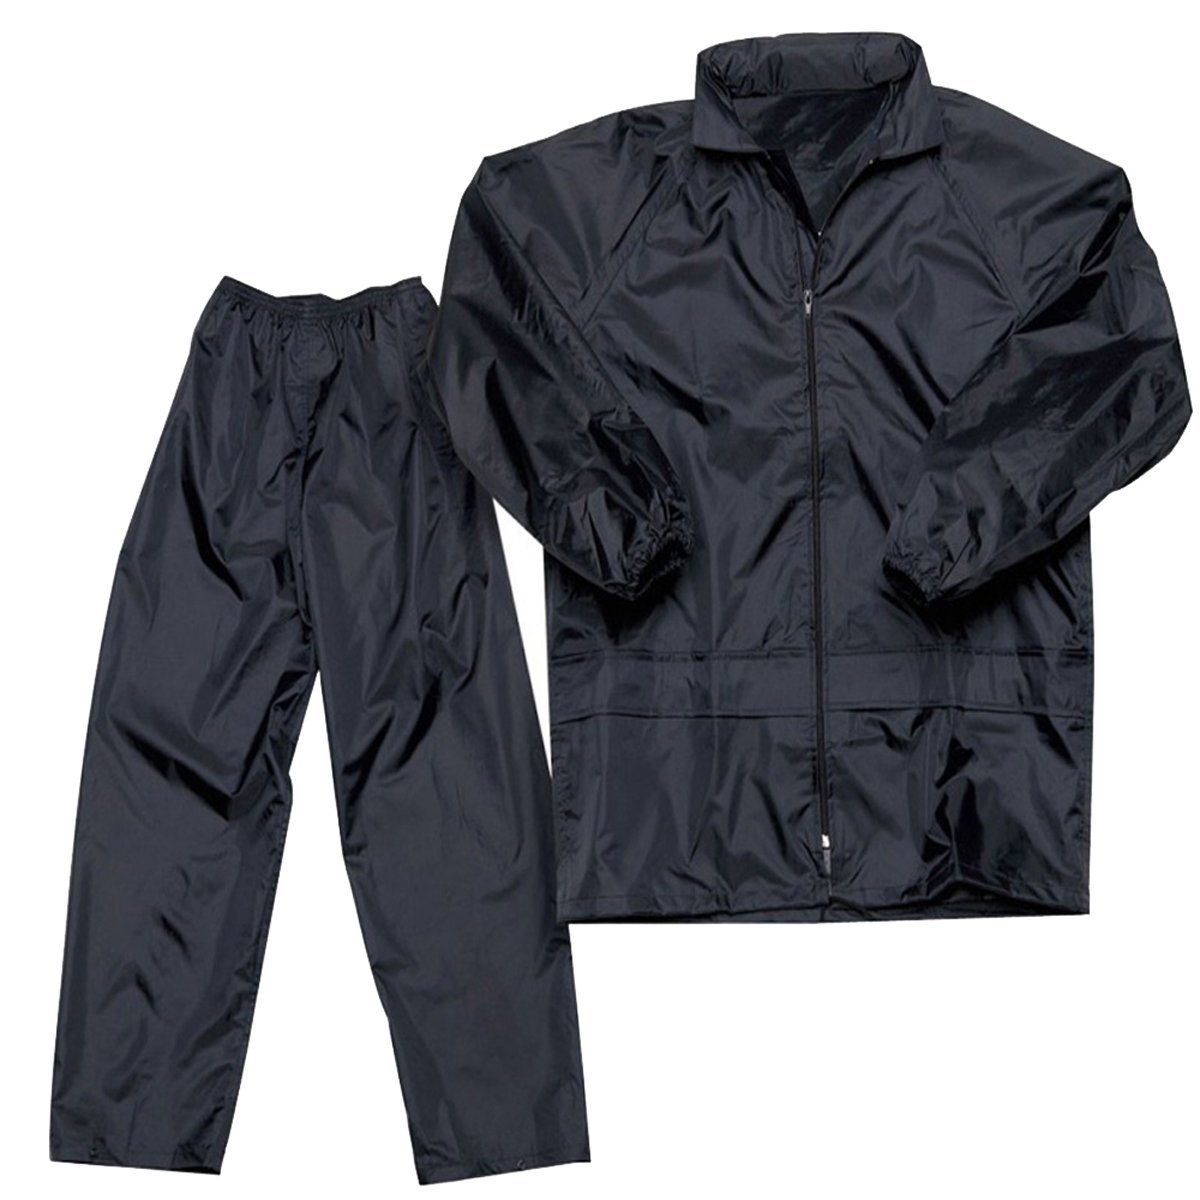 Buy Benjoy Waterproof Unisex Rainsuit With Hood - Black Online @ ₹379 ...